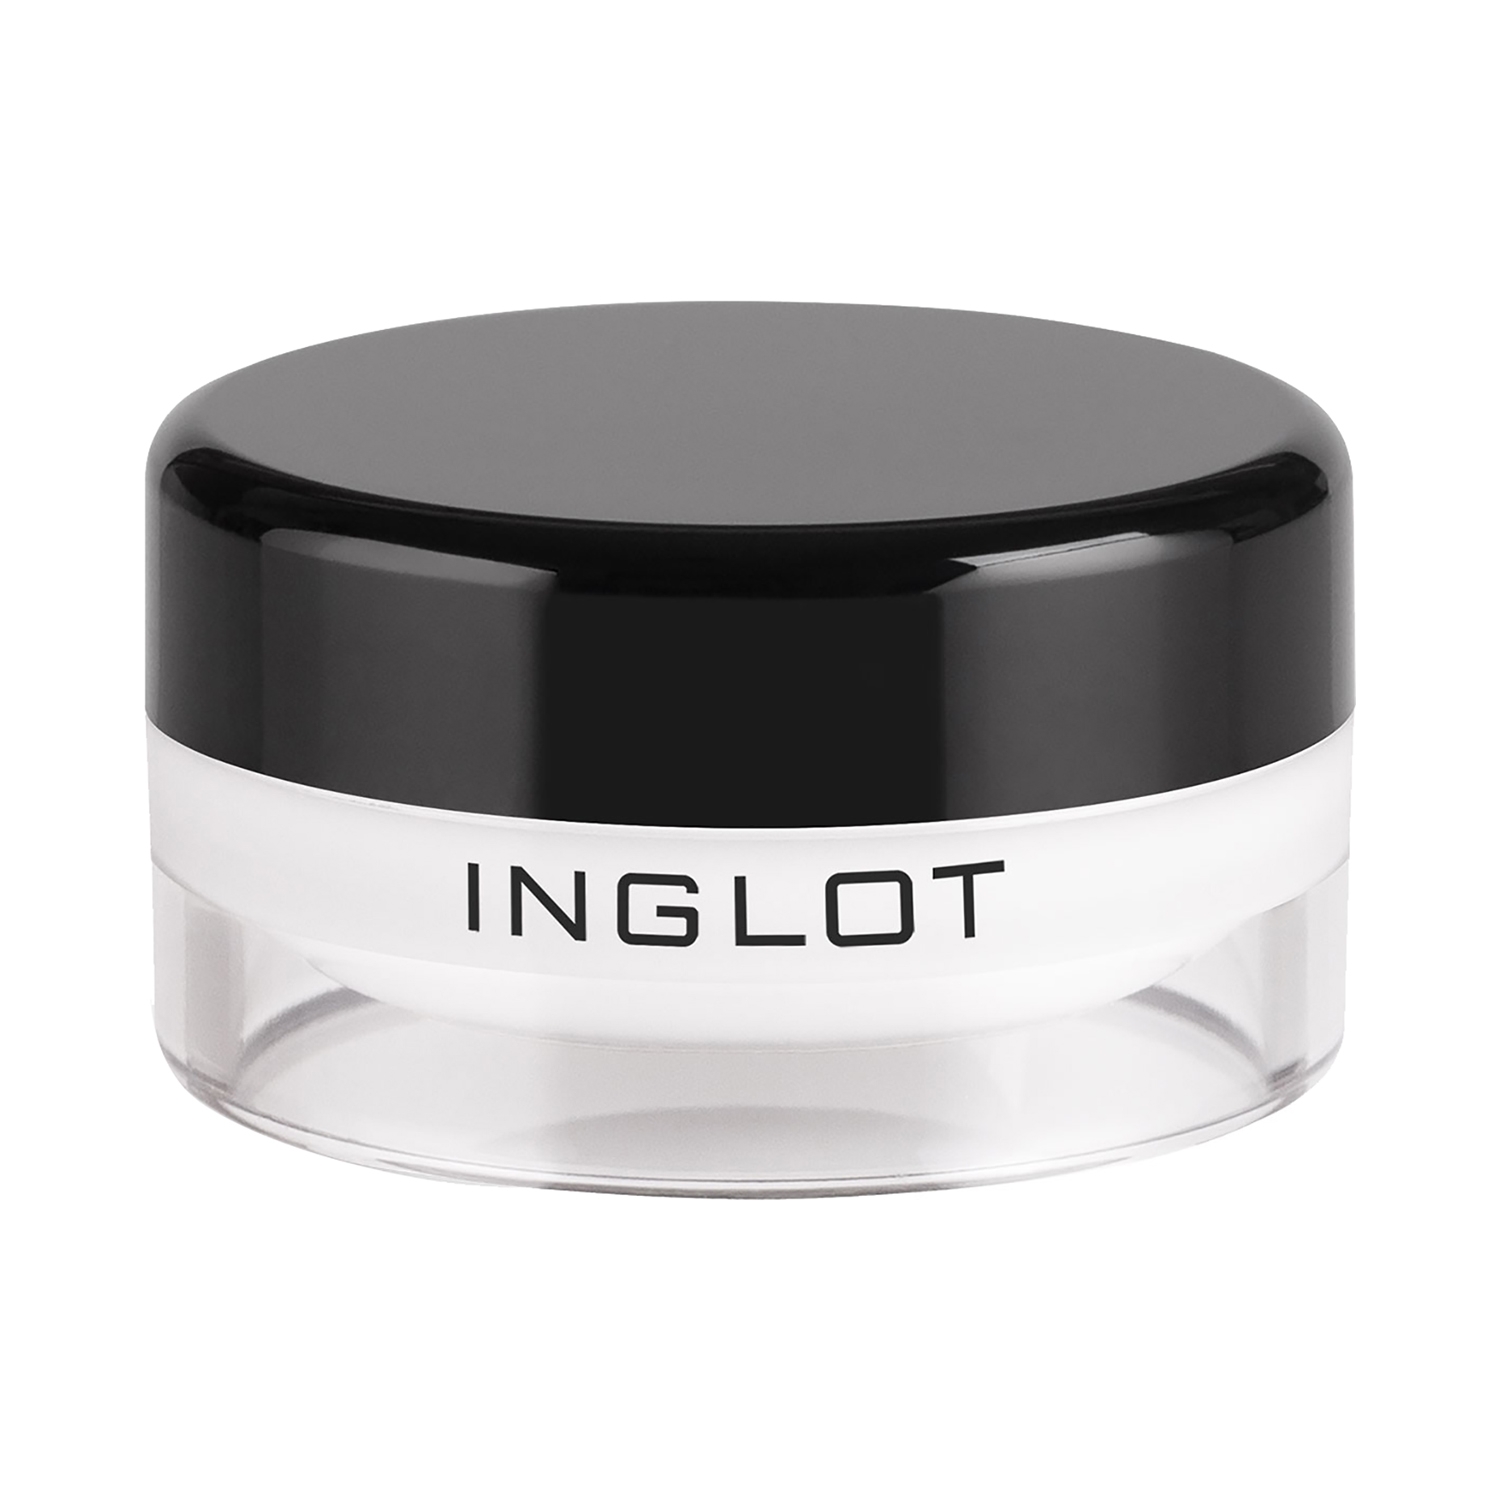 INGLOT | INGLOT AMC Eyeliner Gel - 76 (5.5g)